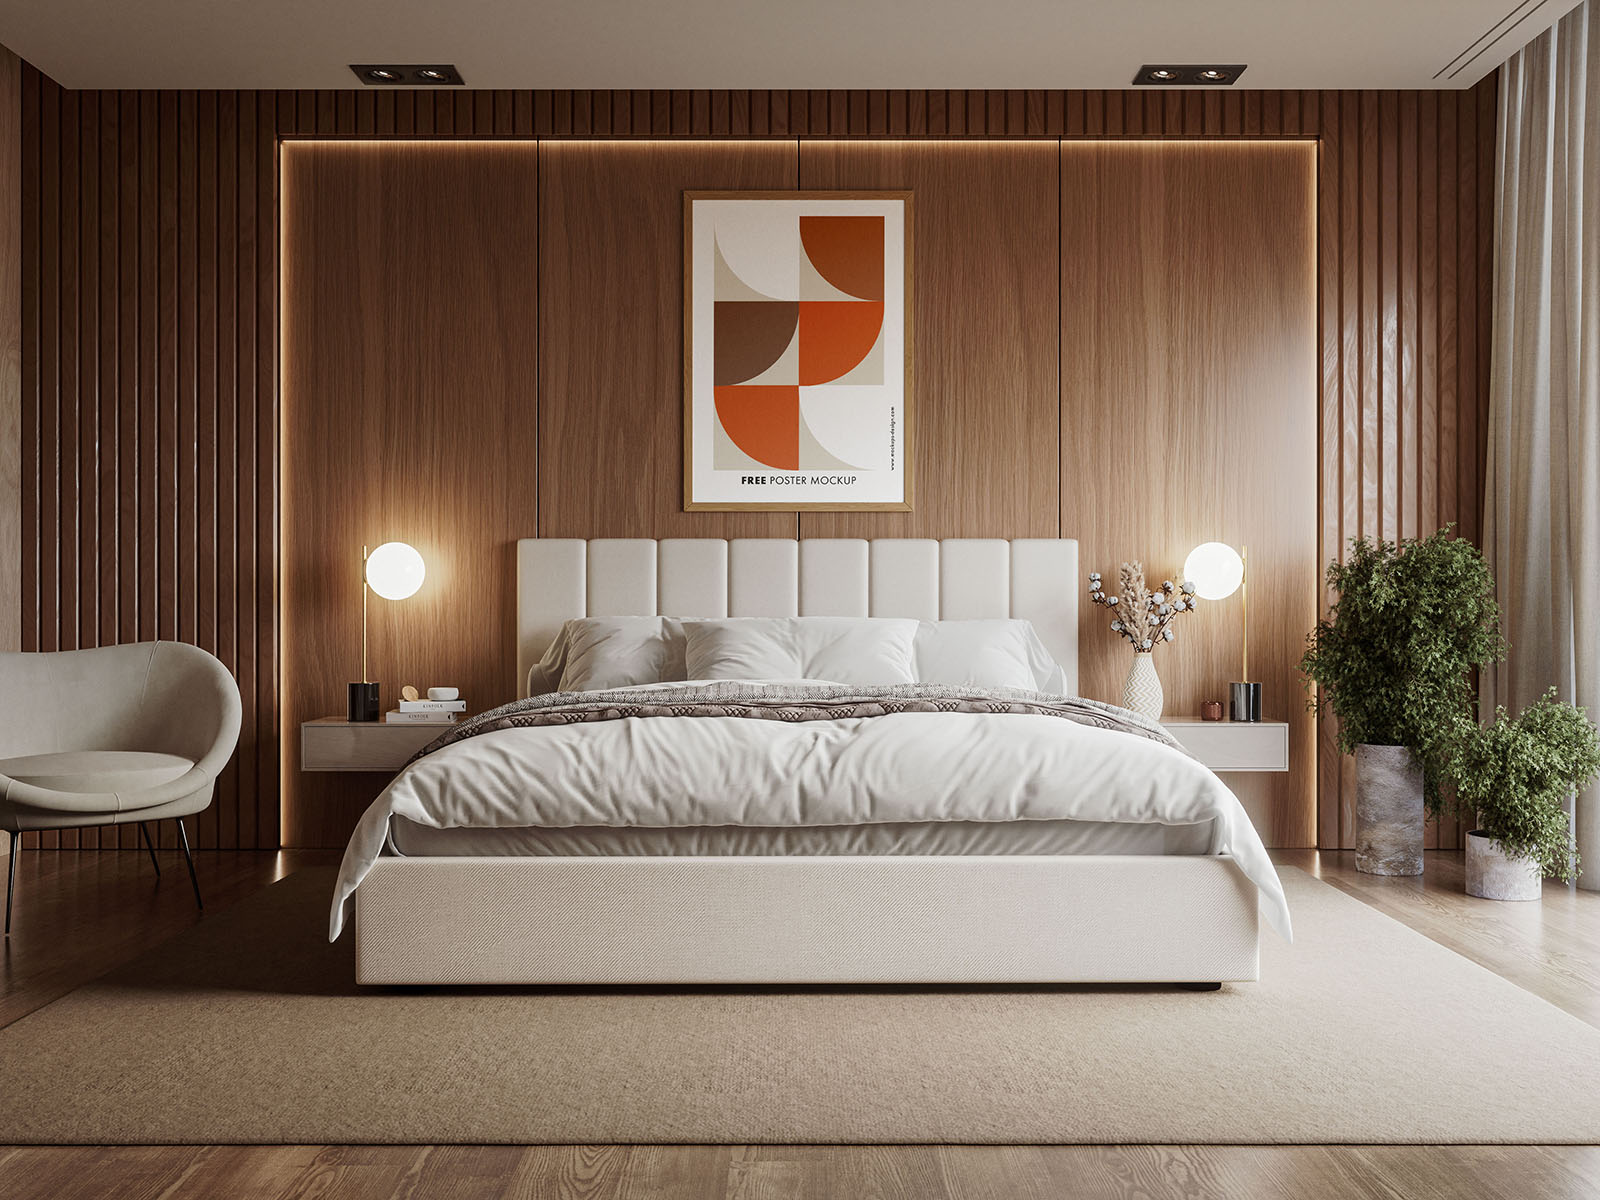 Poster in elegant bedroom mockup